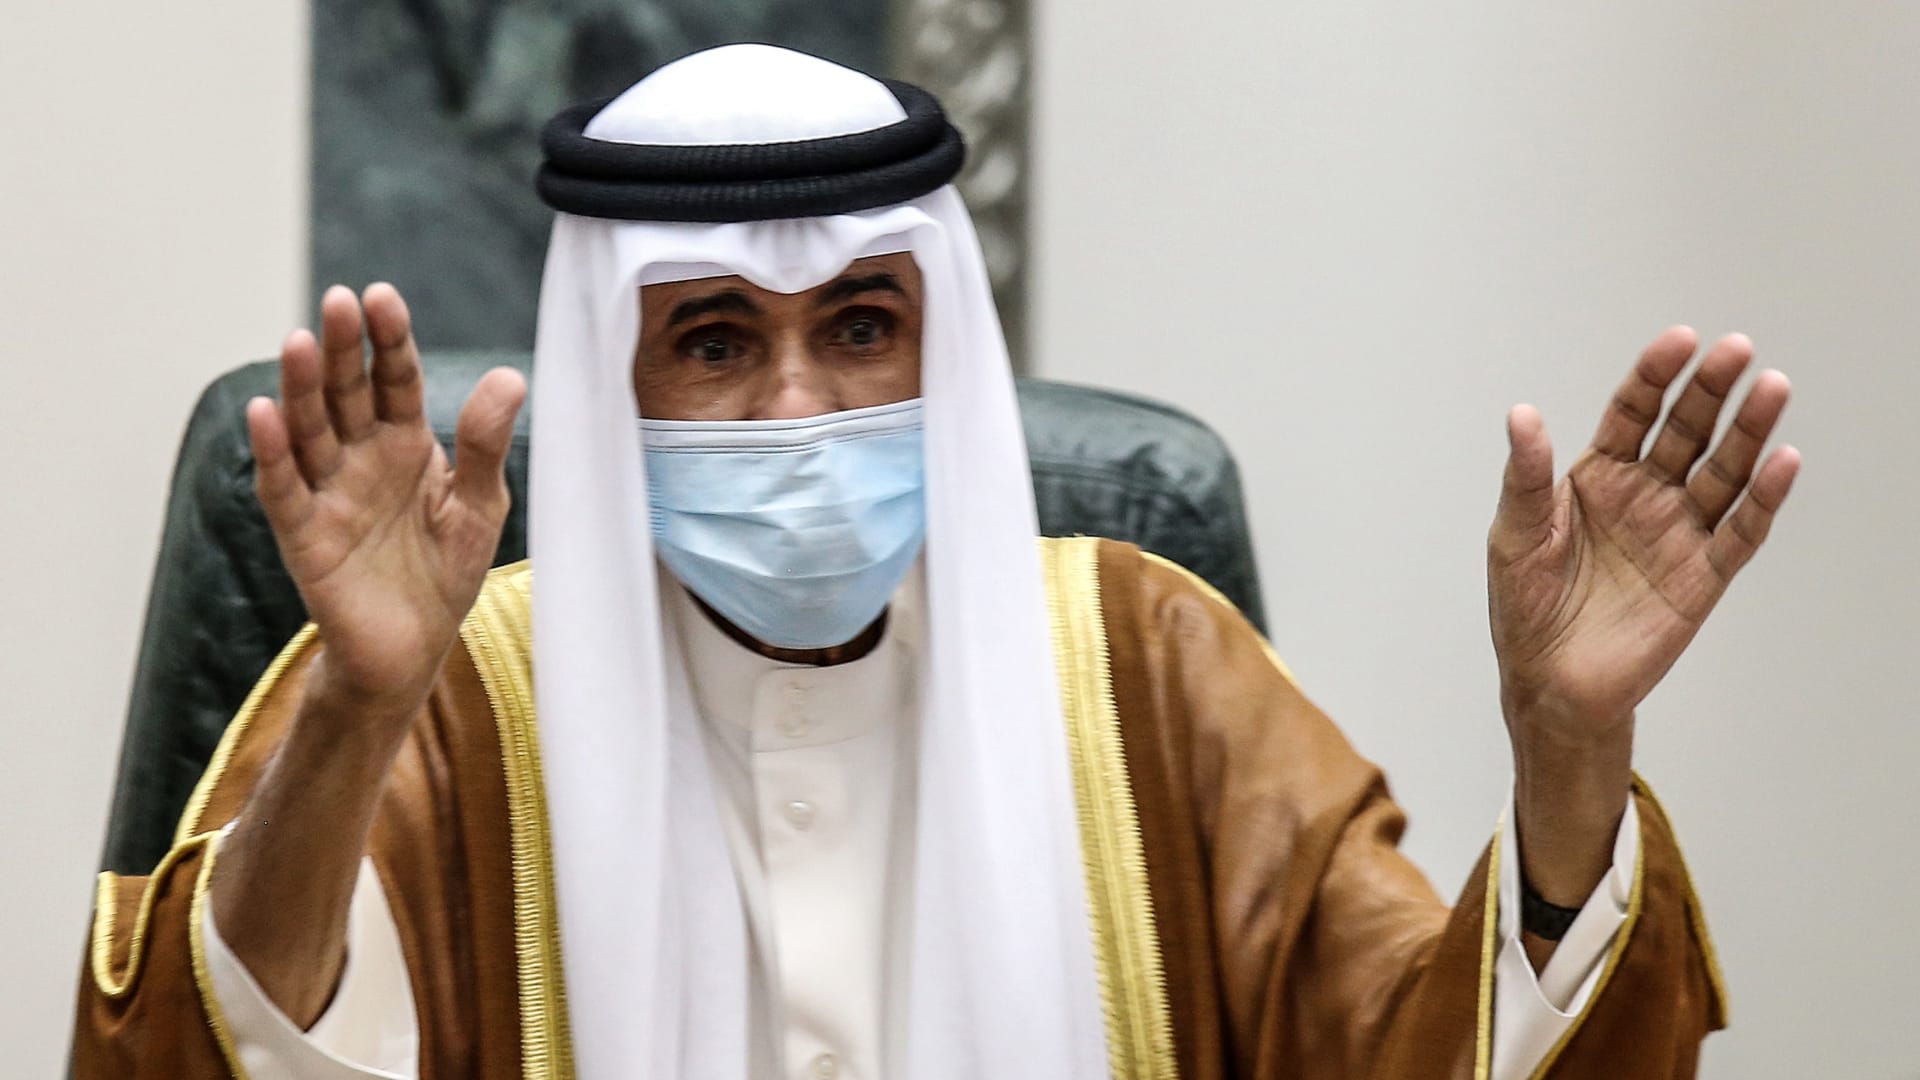 أمير الكويت يستعين بولي العهد لتولي بعض اختصاصته الدستورية